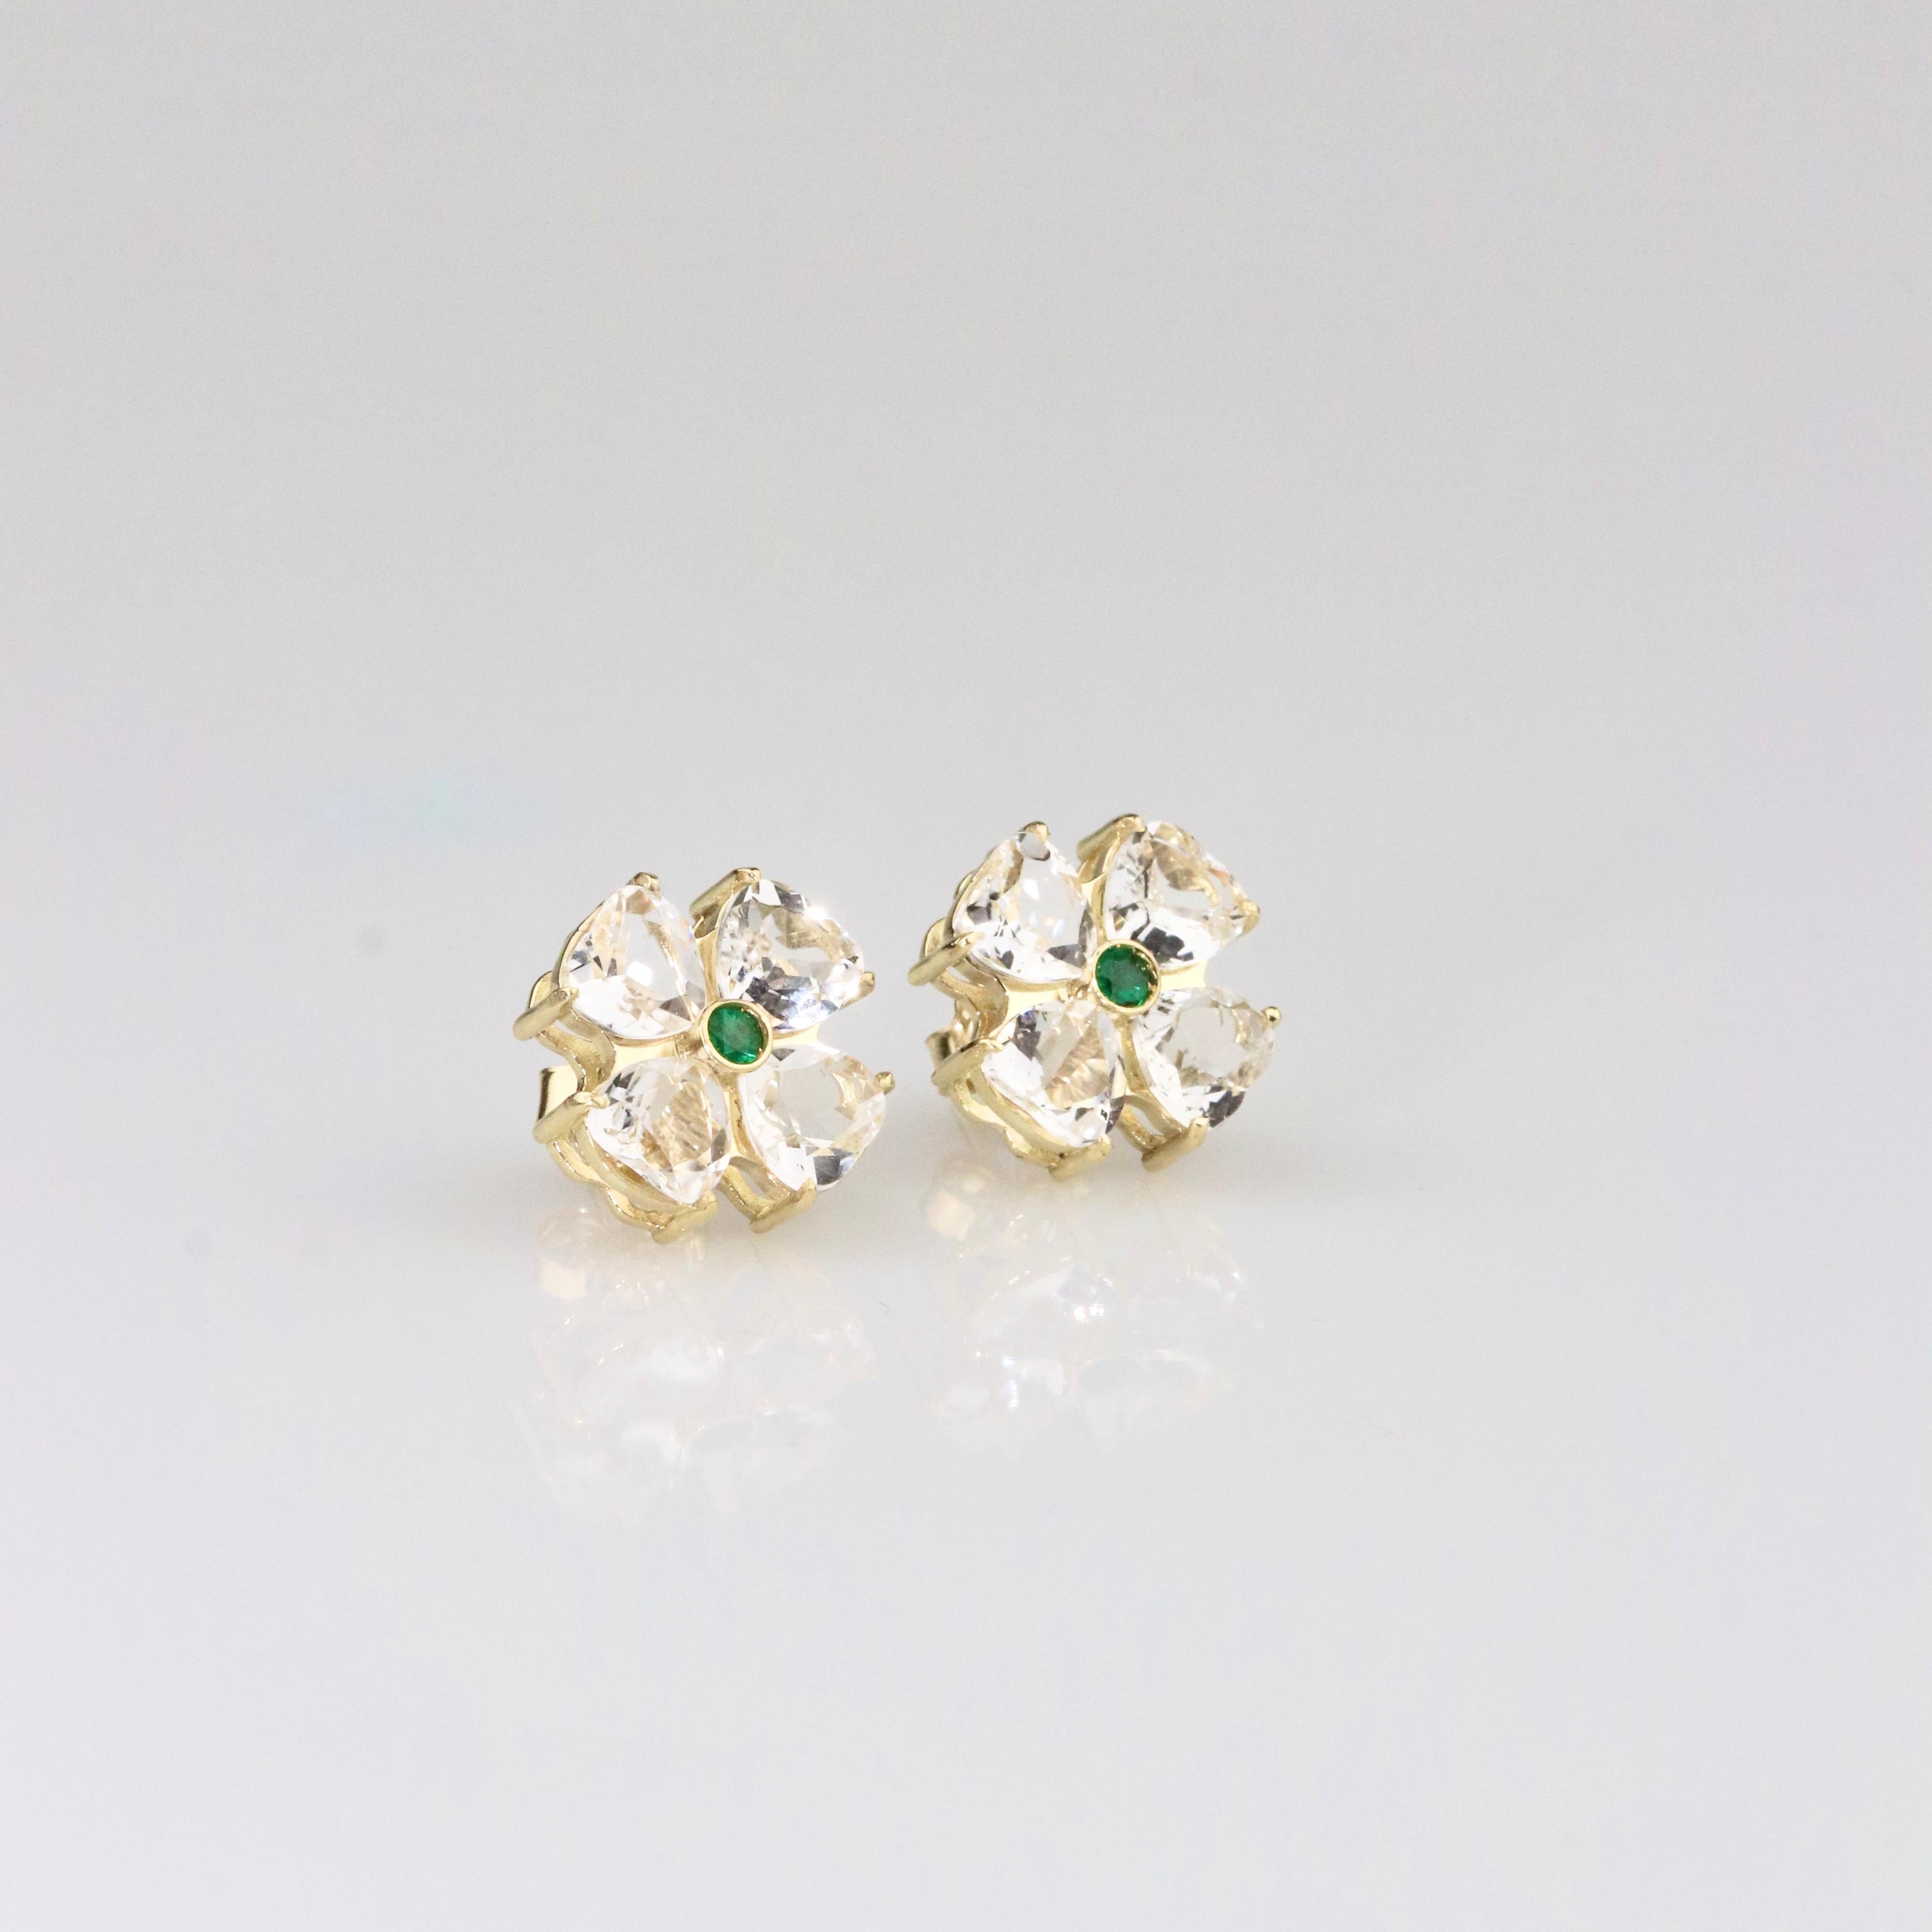 Heart Cut Flower Earrings & Emerald - 18K Solid Yellow Gold For Sale